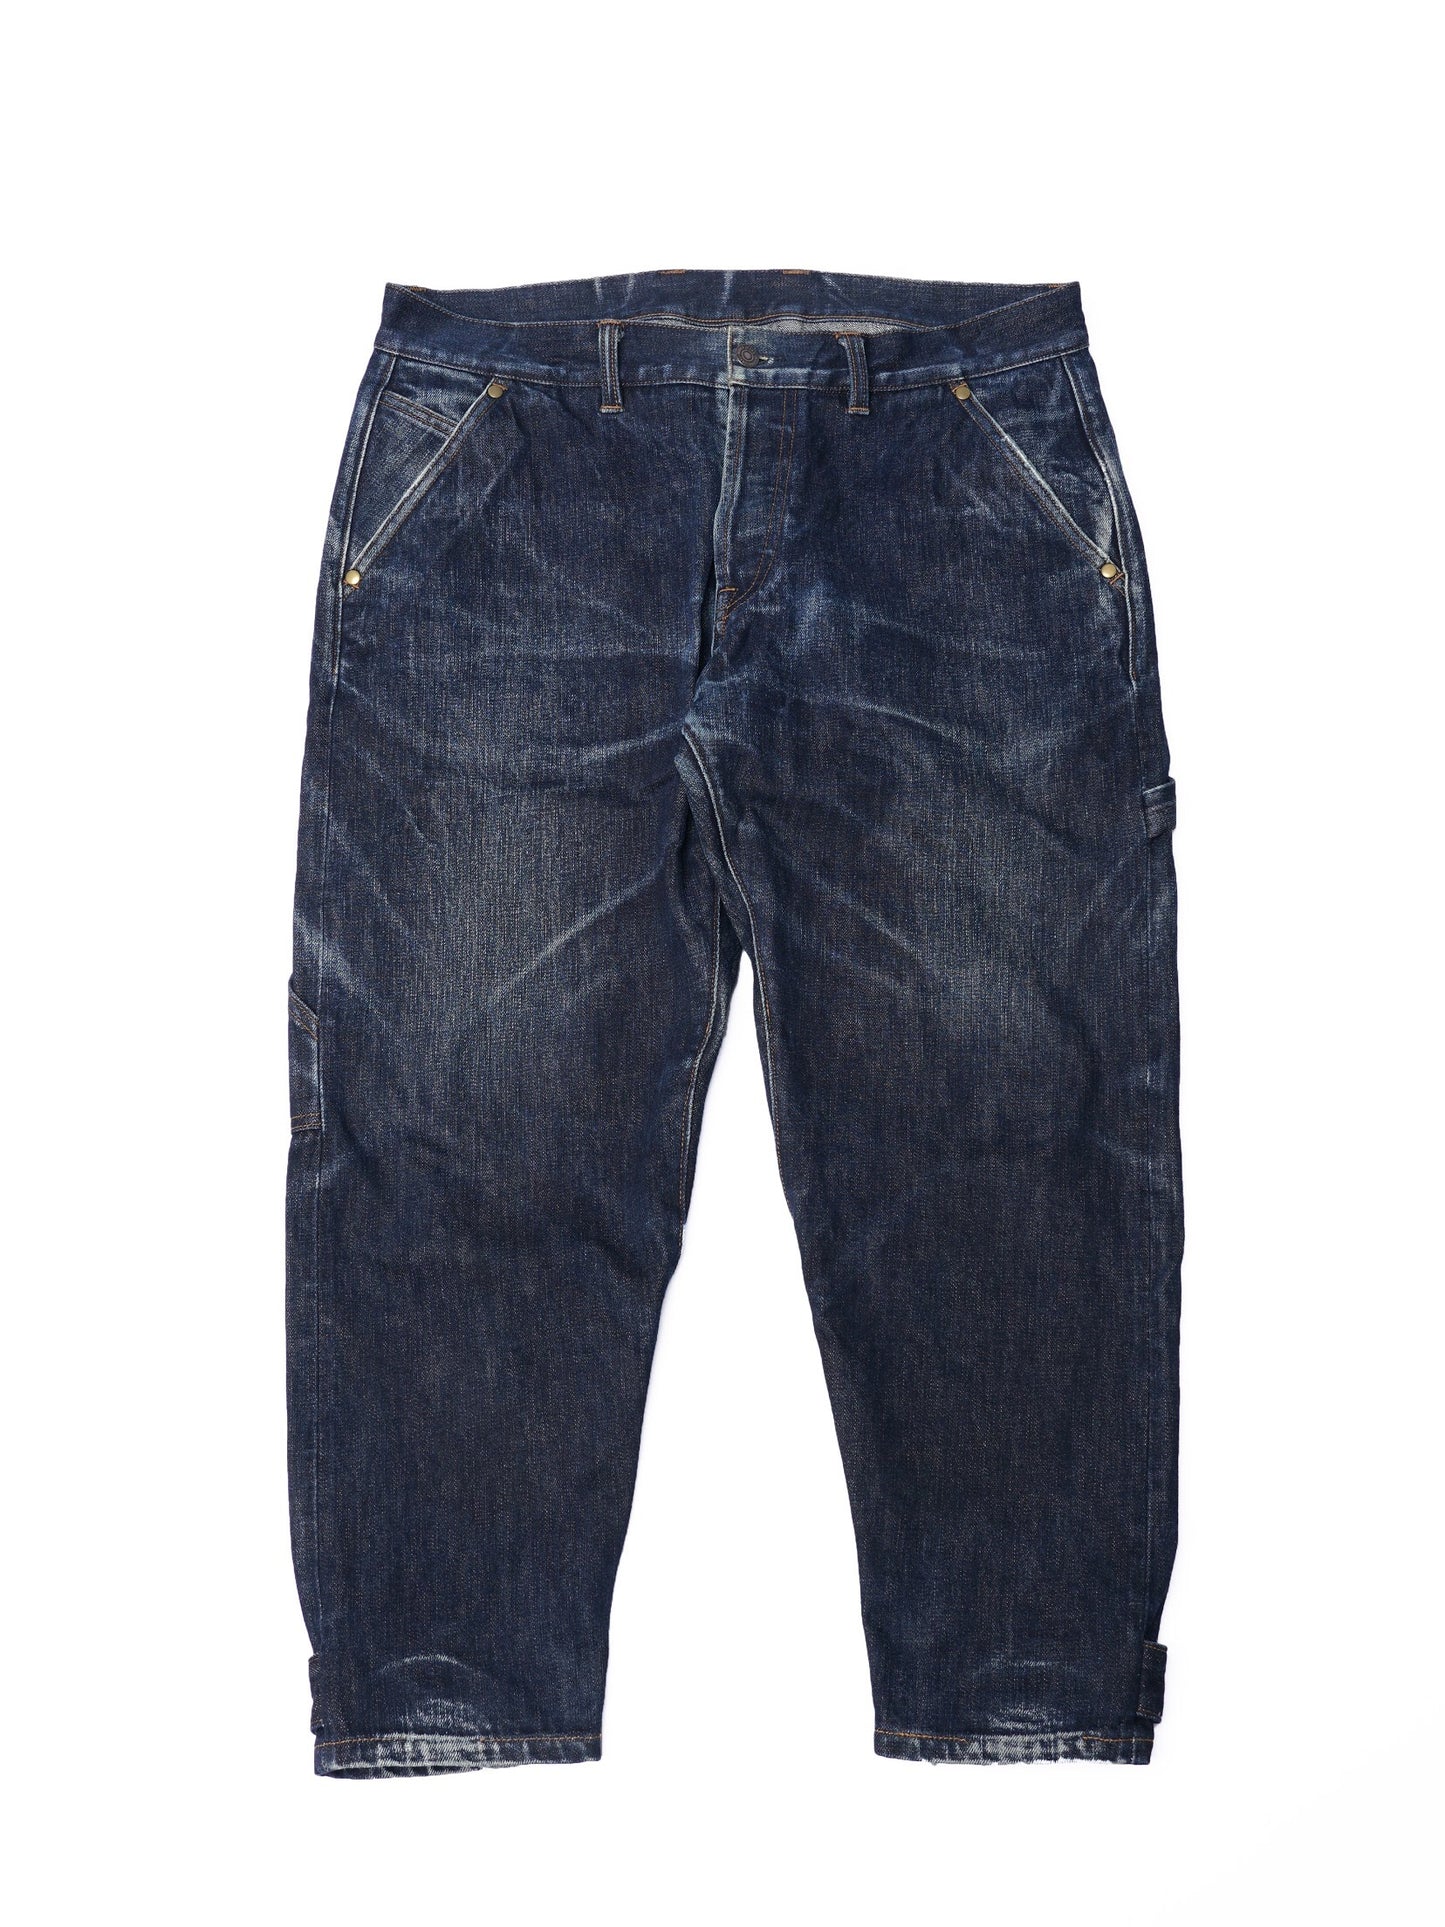 【訂製】W02 15oz. Collect Mills Denim Worker Jeans